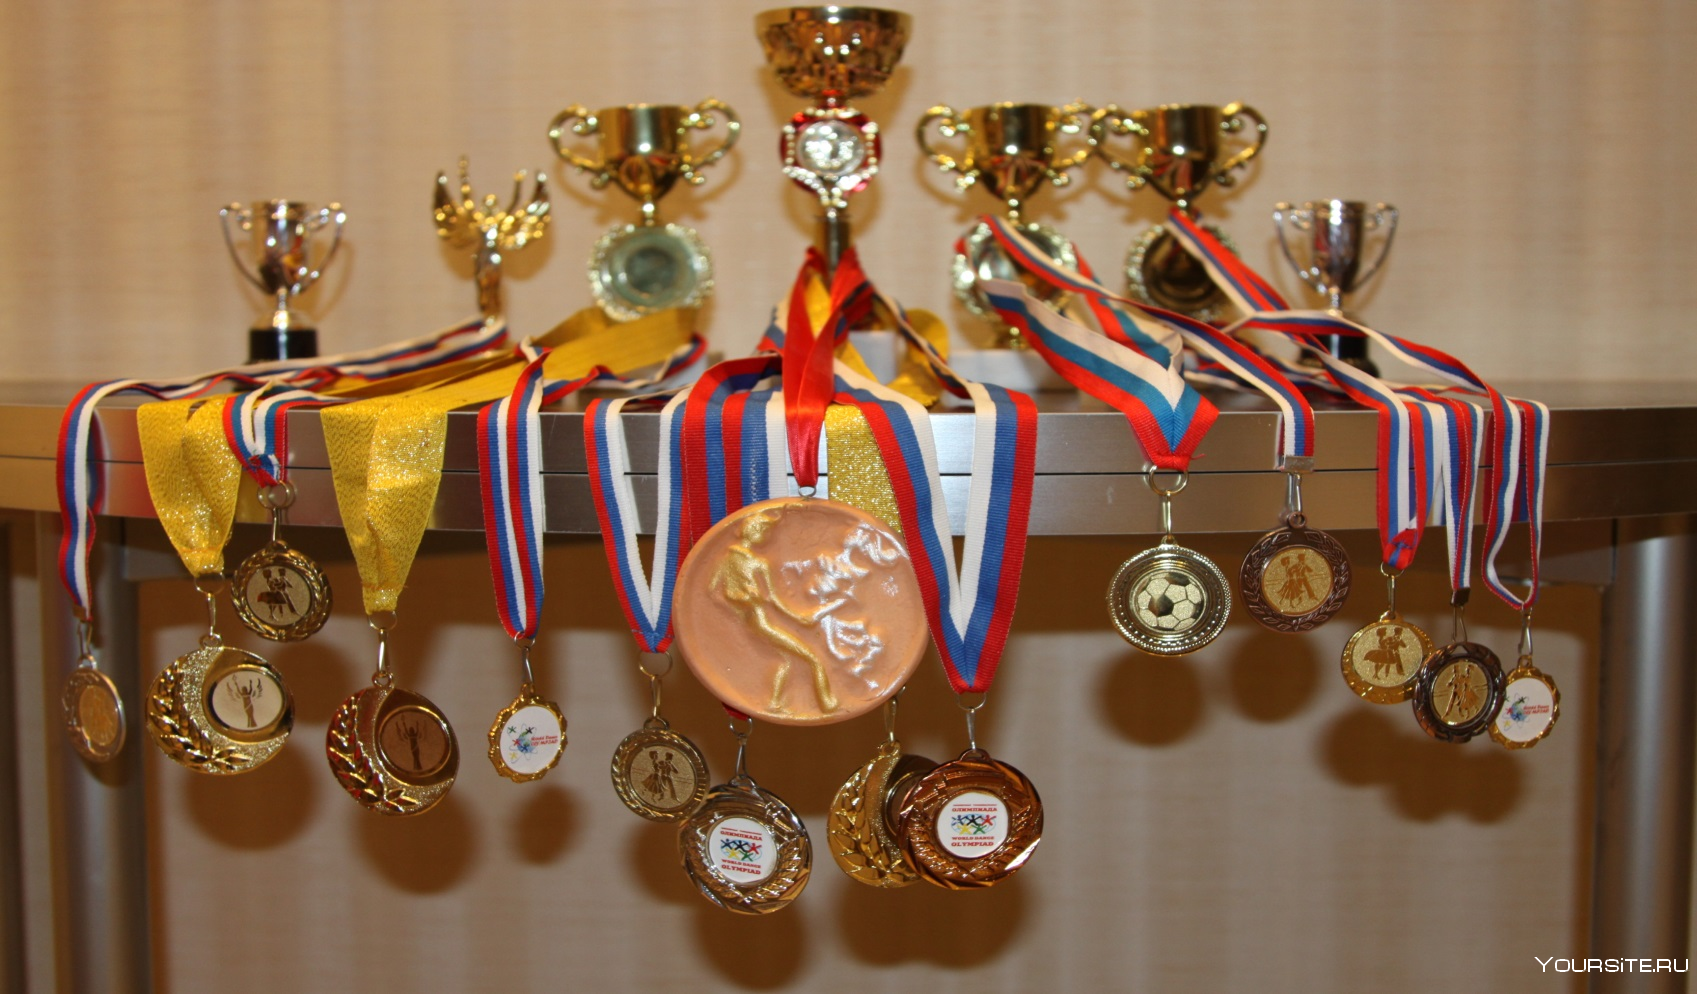 Медали спортивные. Спортивные награды. Много медалей. Кубки медали награды. Sports medals